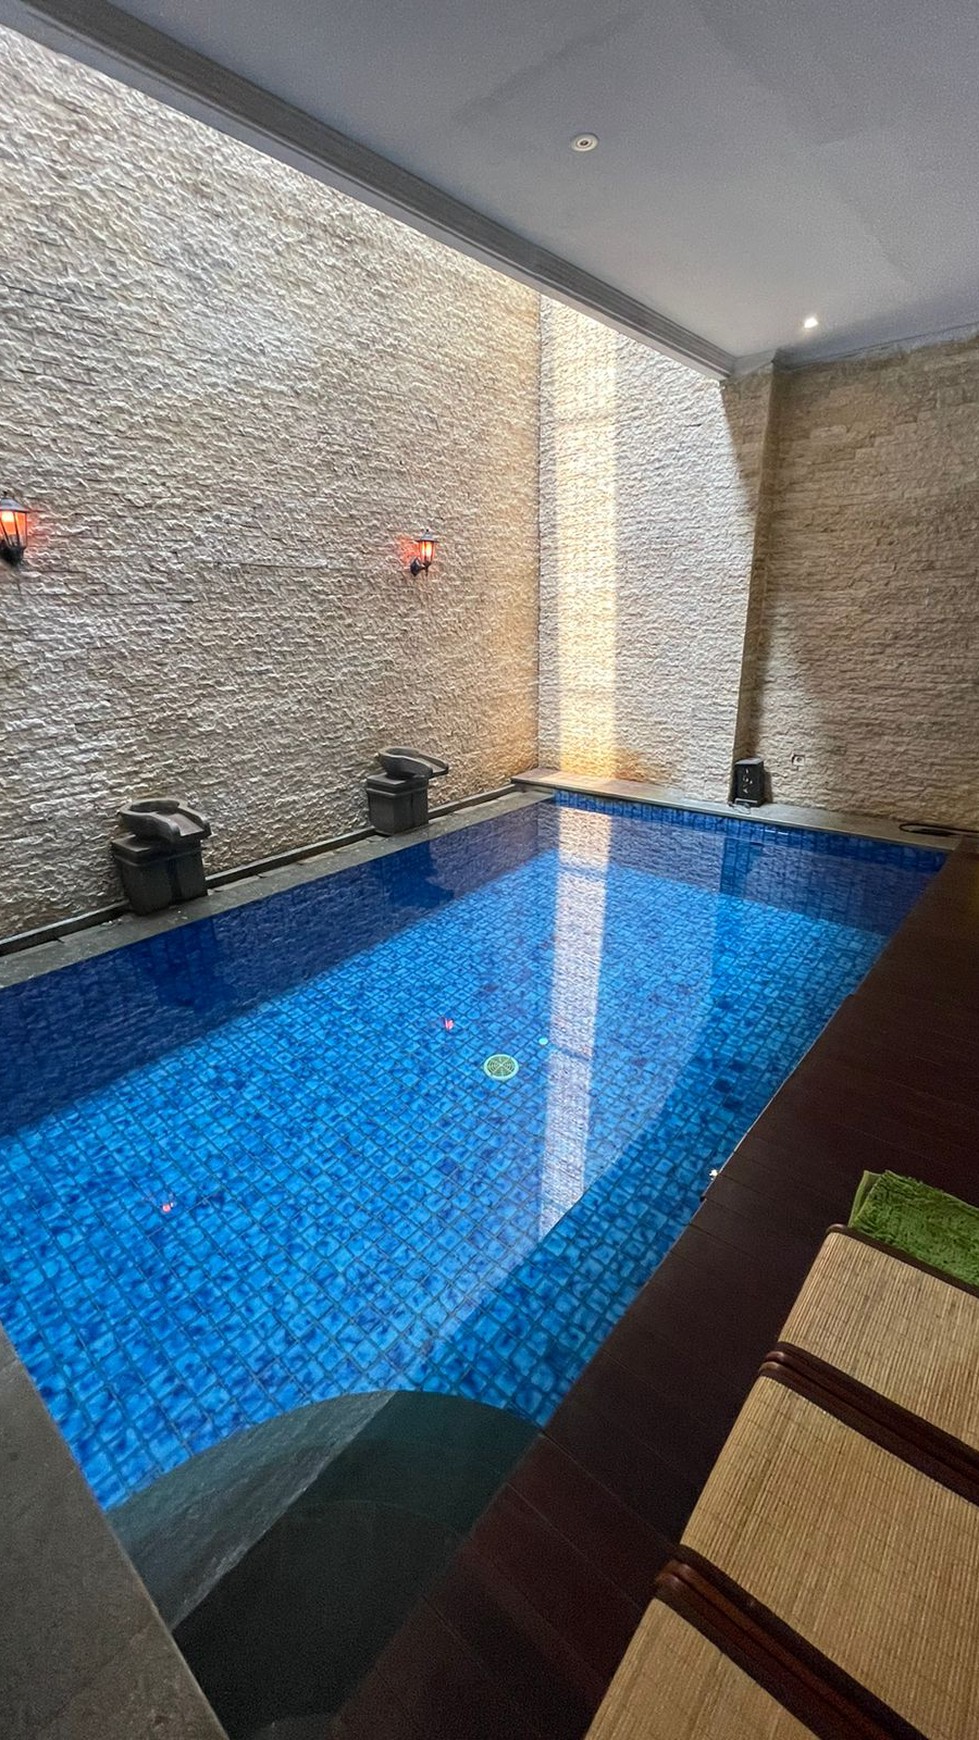 Rumah minimalis modern ada kolam renang, Rapih dengan Kolam renang dalam Cluster Discovery di Bintaro jaya Sektor 9.